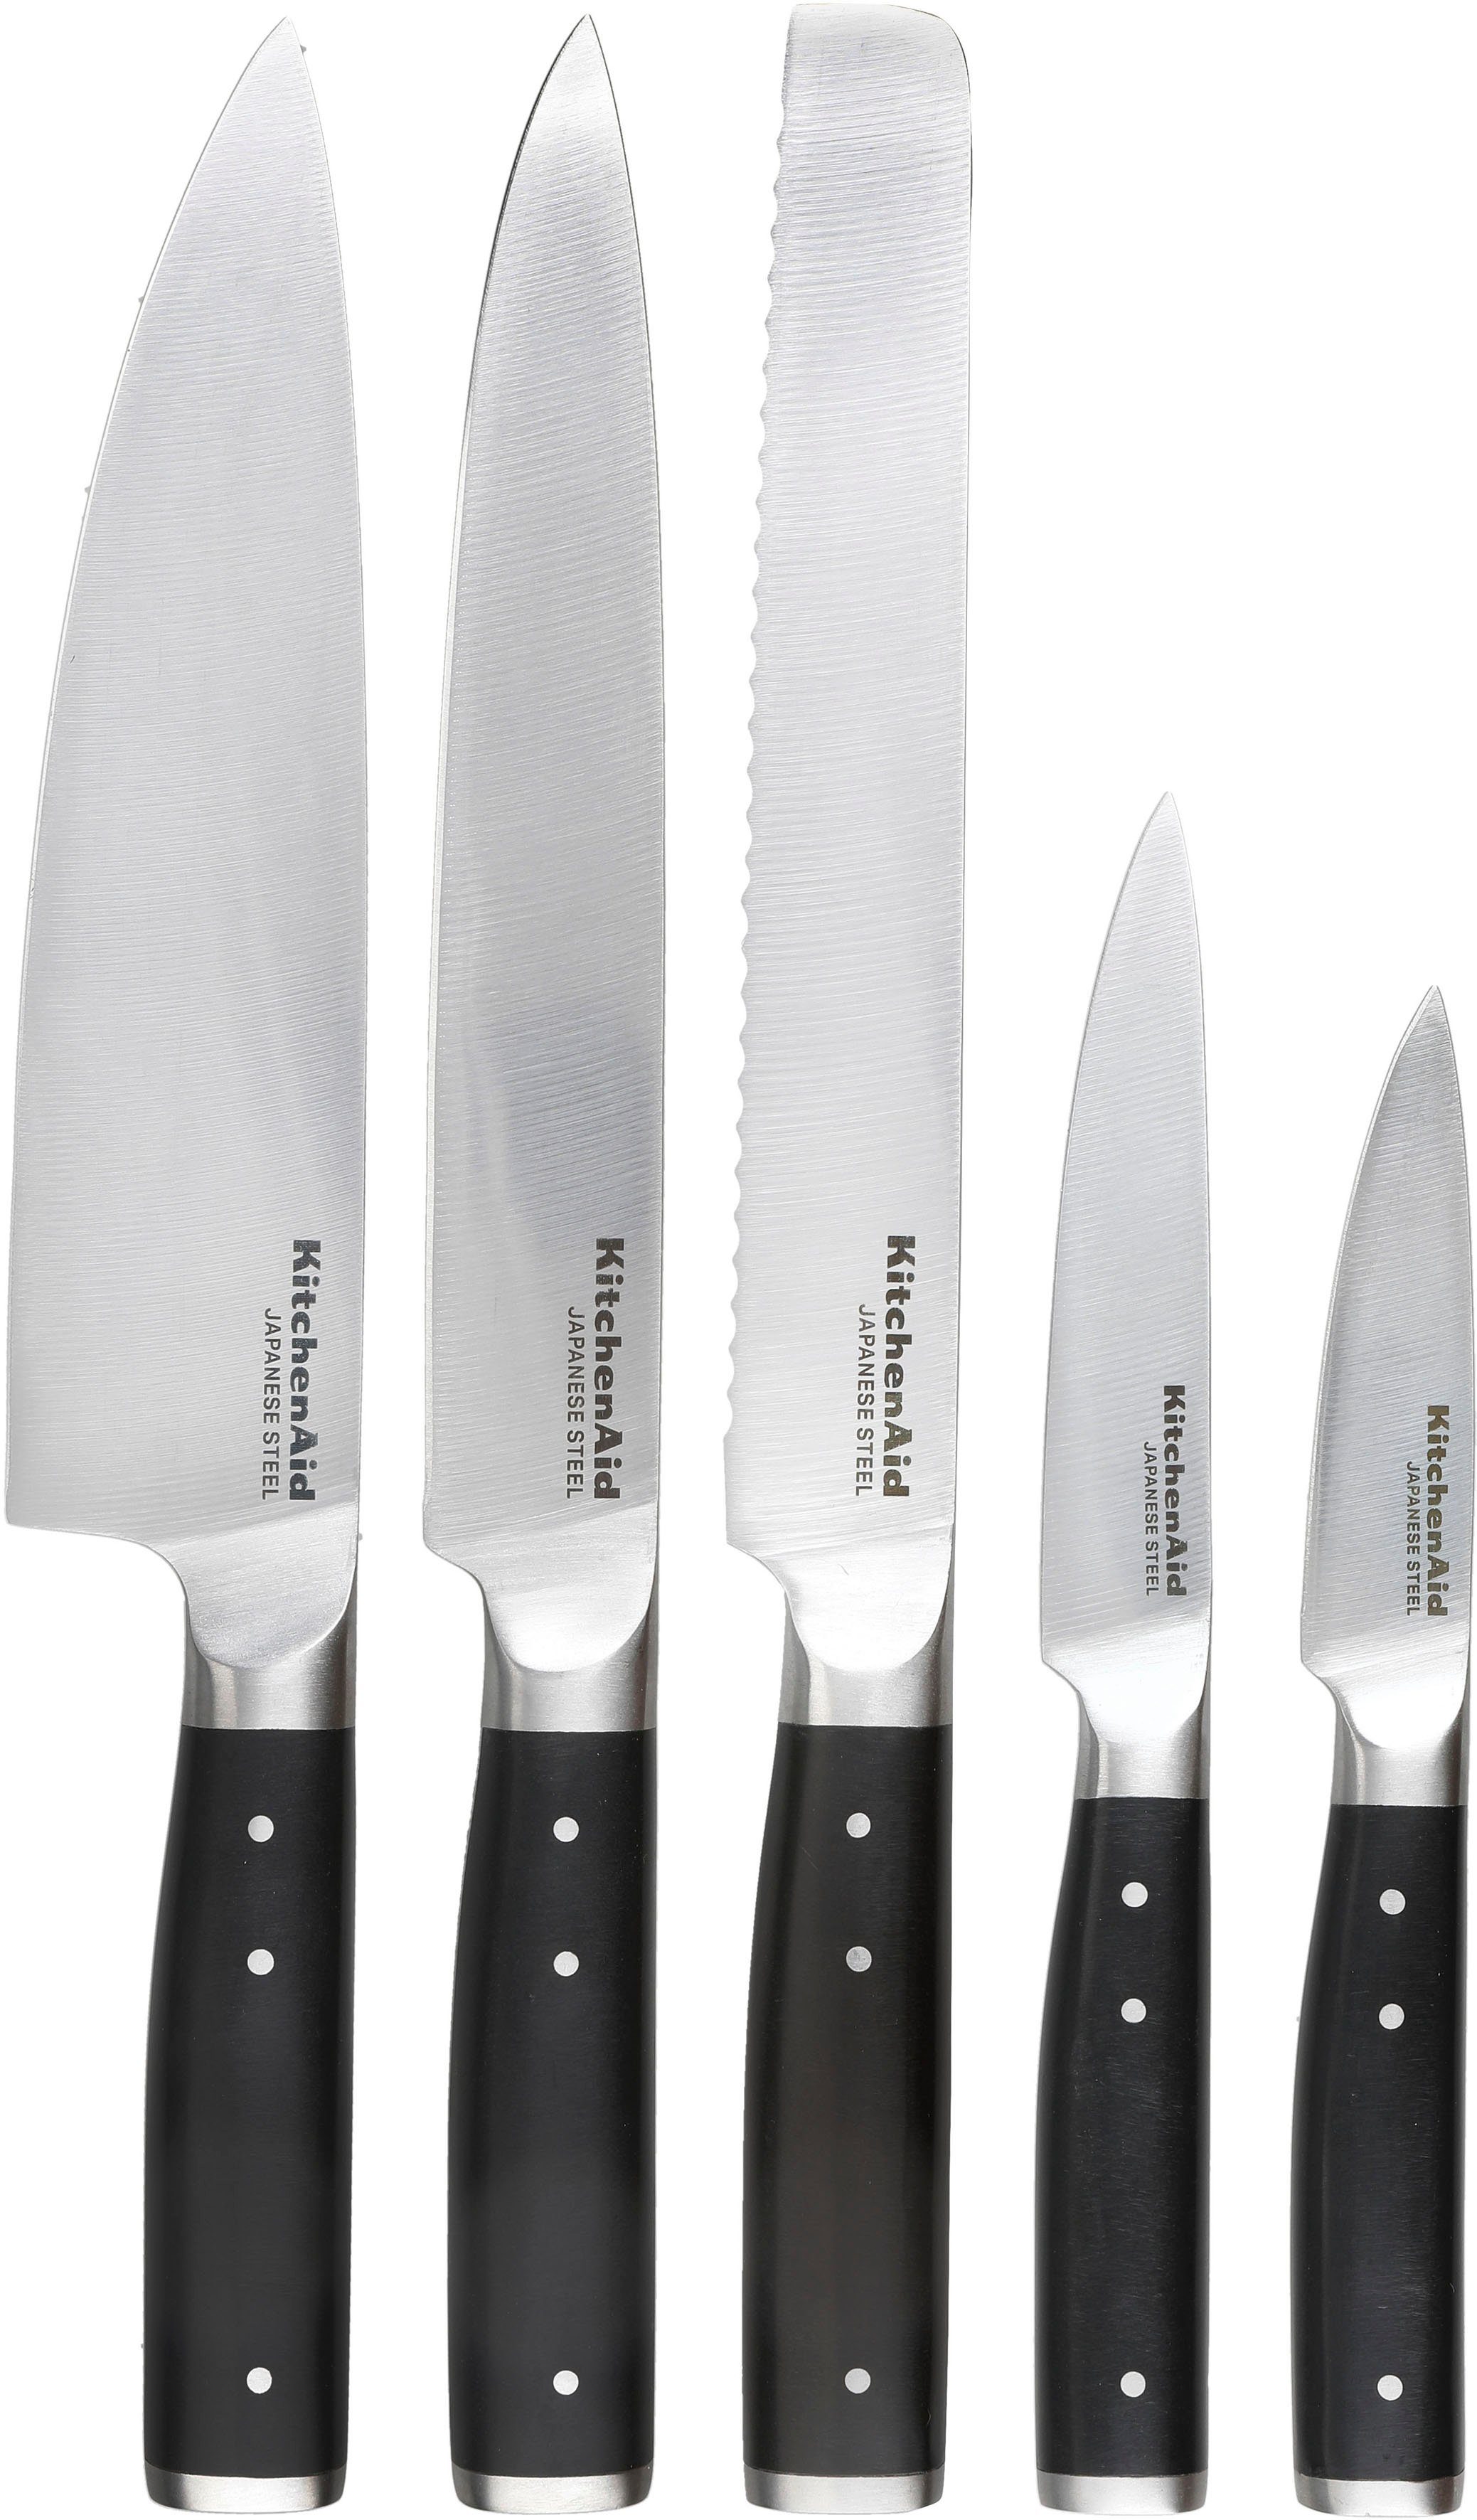 Messerschärfer integrierter Messerblock Kohlenstoffstahl, Classic KitchenAid (6tlg), Messer inkl. japanischer